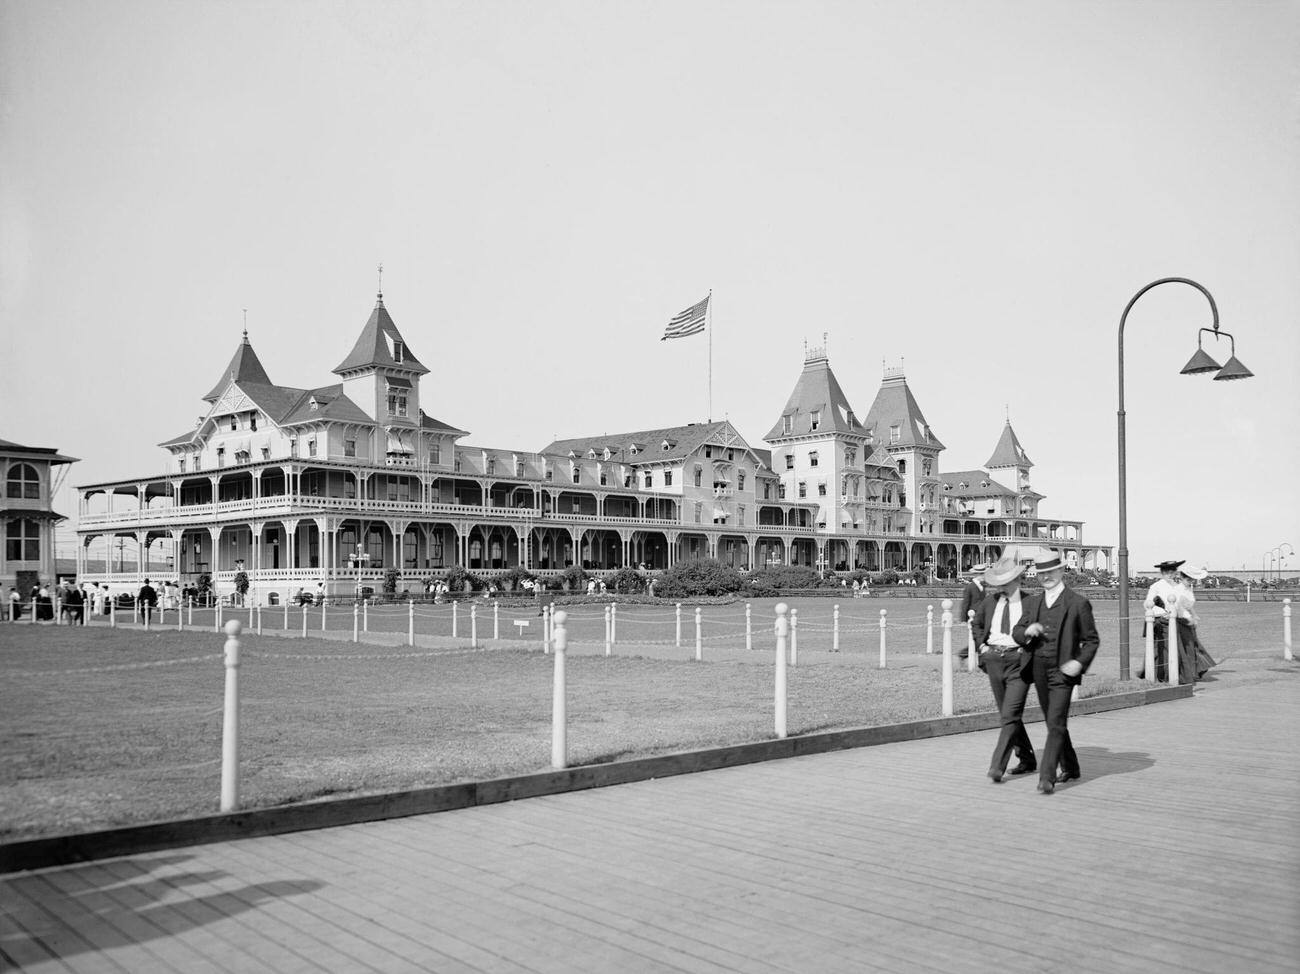 Hotel And Boardwalk At Brighton Beach, Brooklyn, 1903